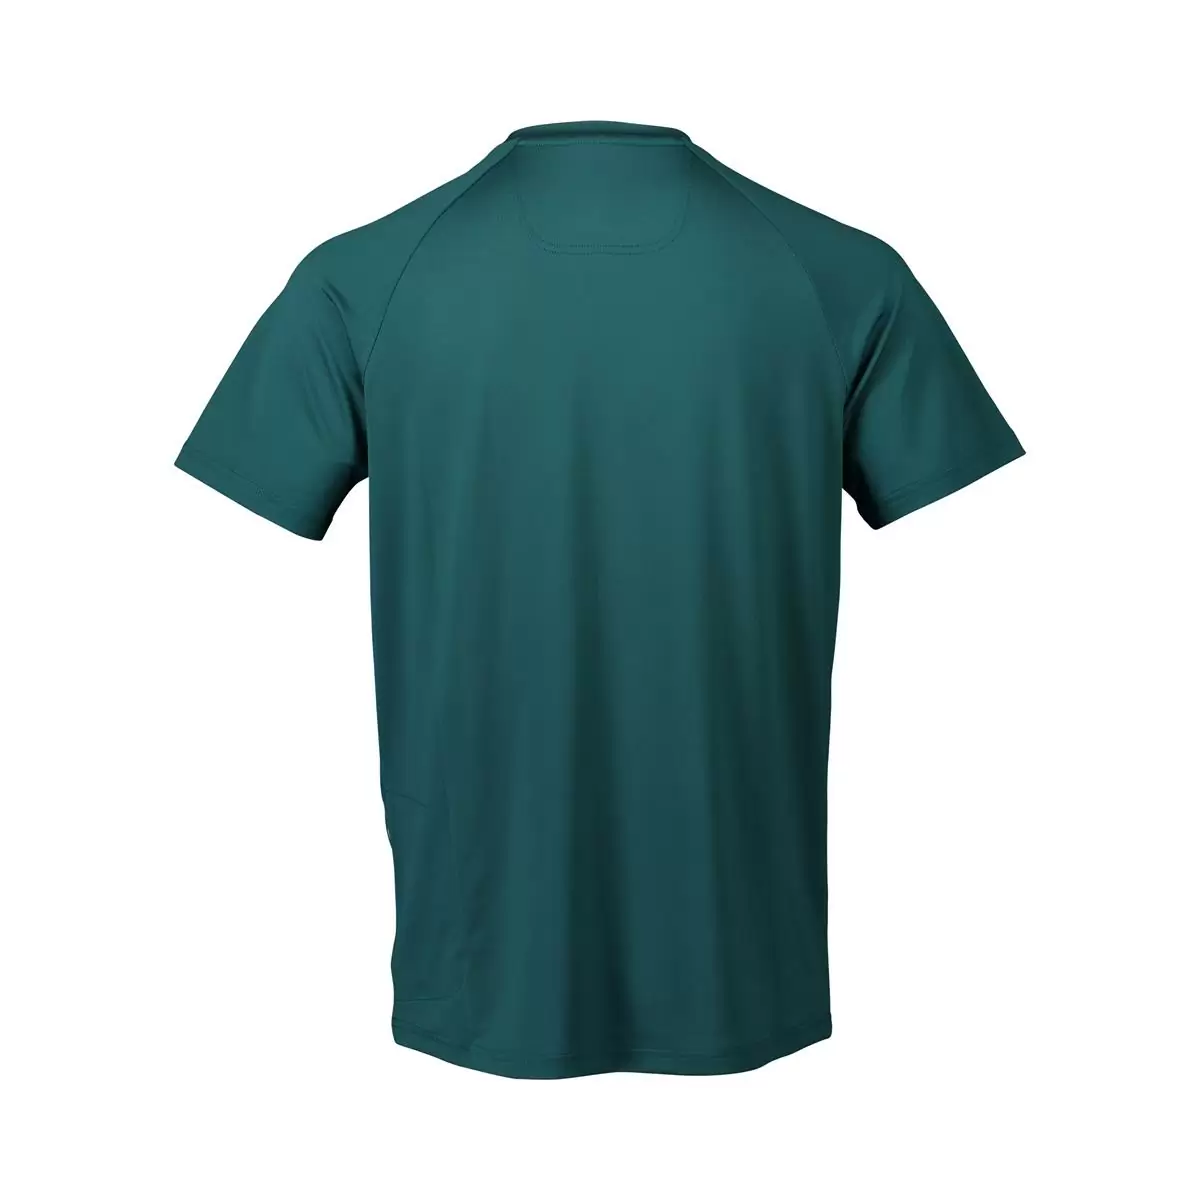 T-shirt Reform Enduro Dioptase Bleu taille M #1